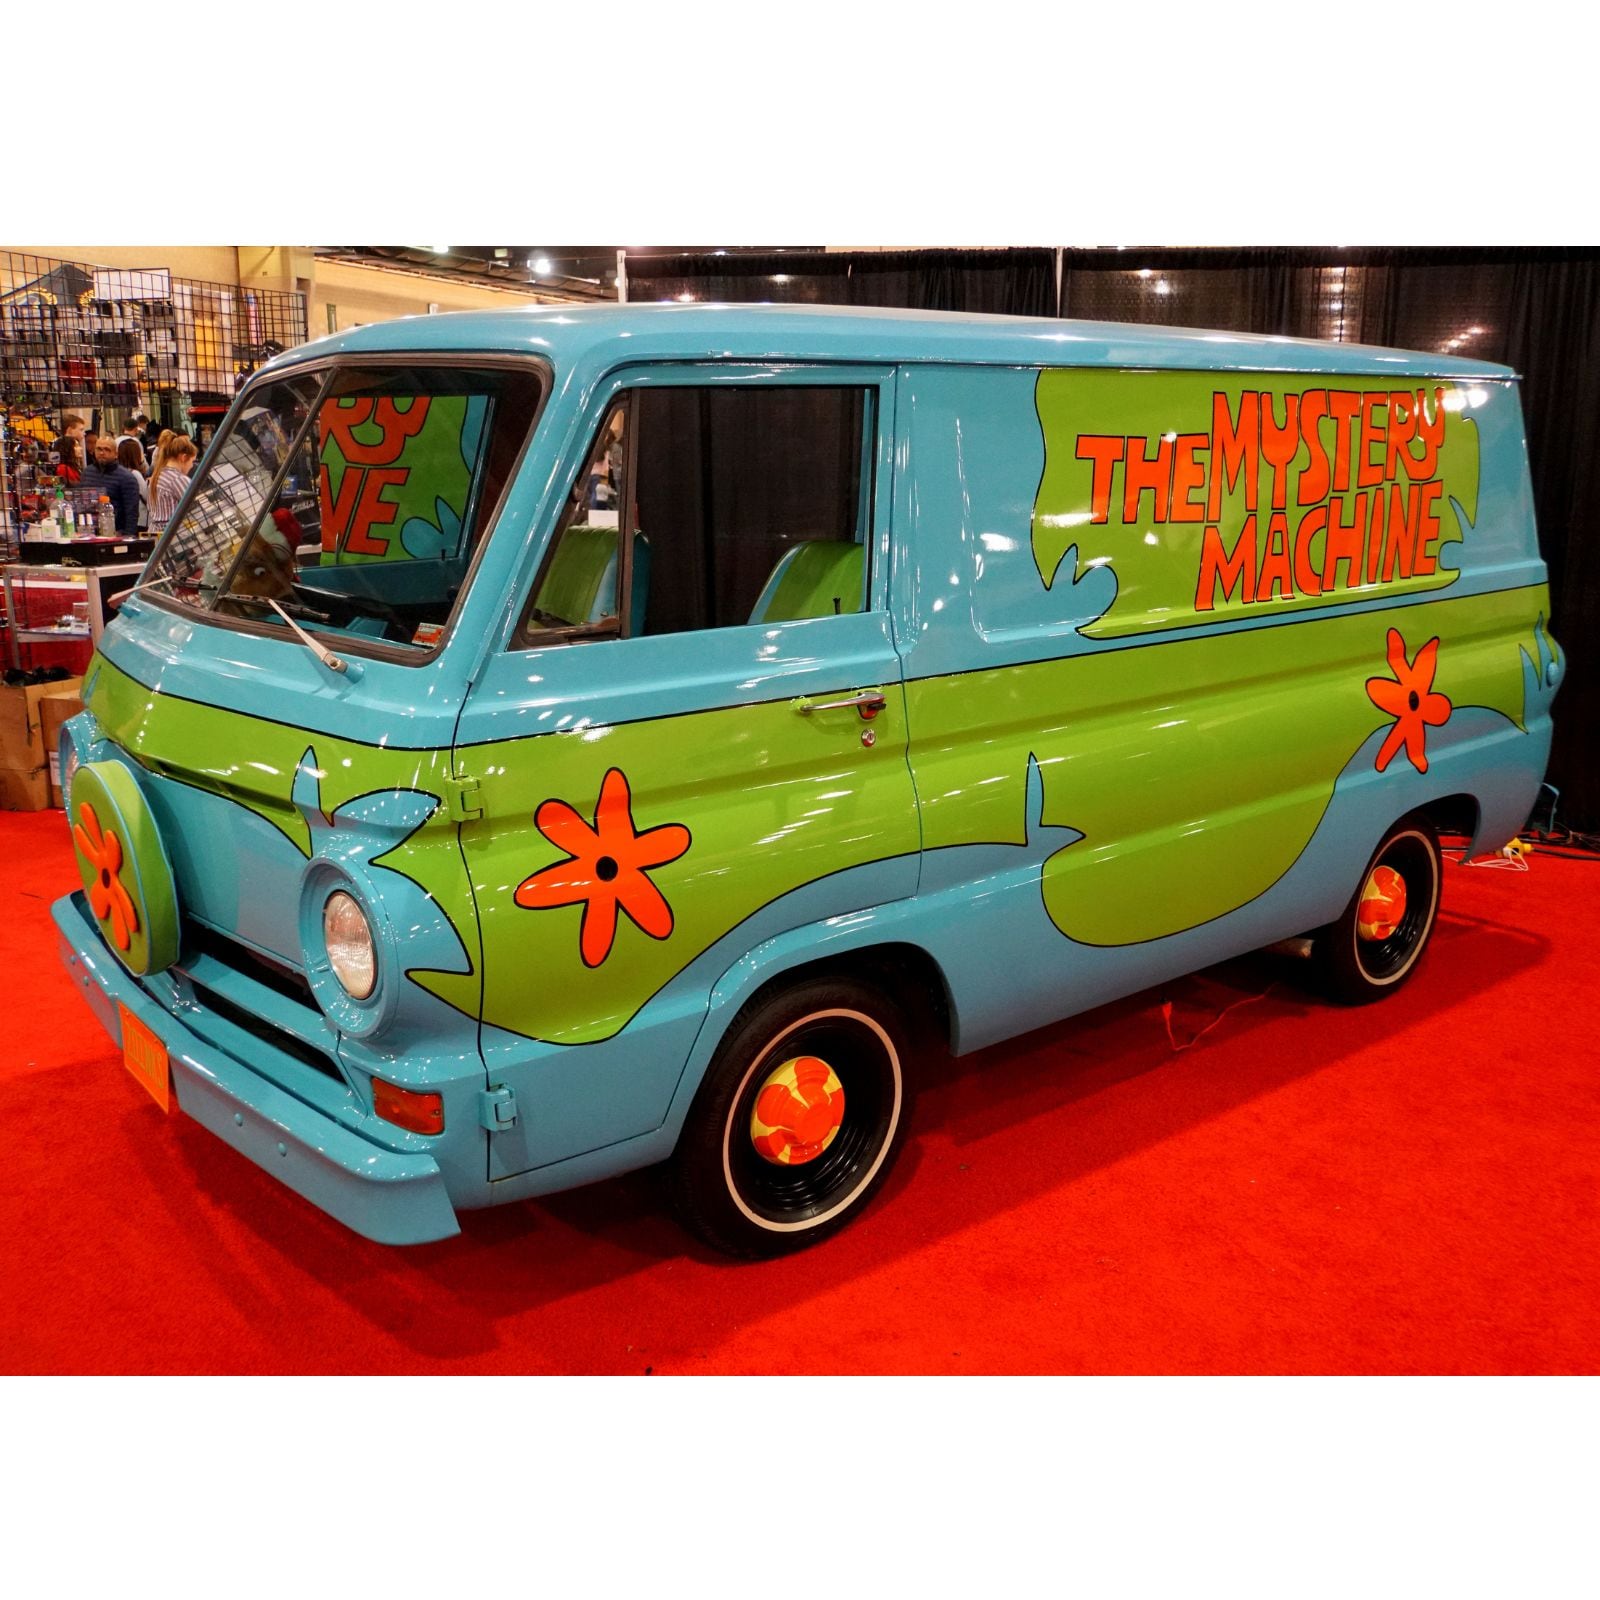 The Mystery Machine Van Scooby Doo Wallpapers